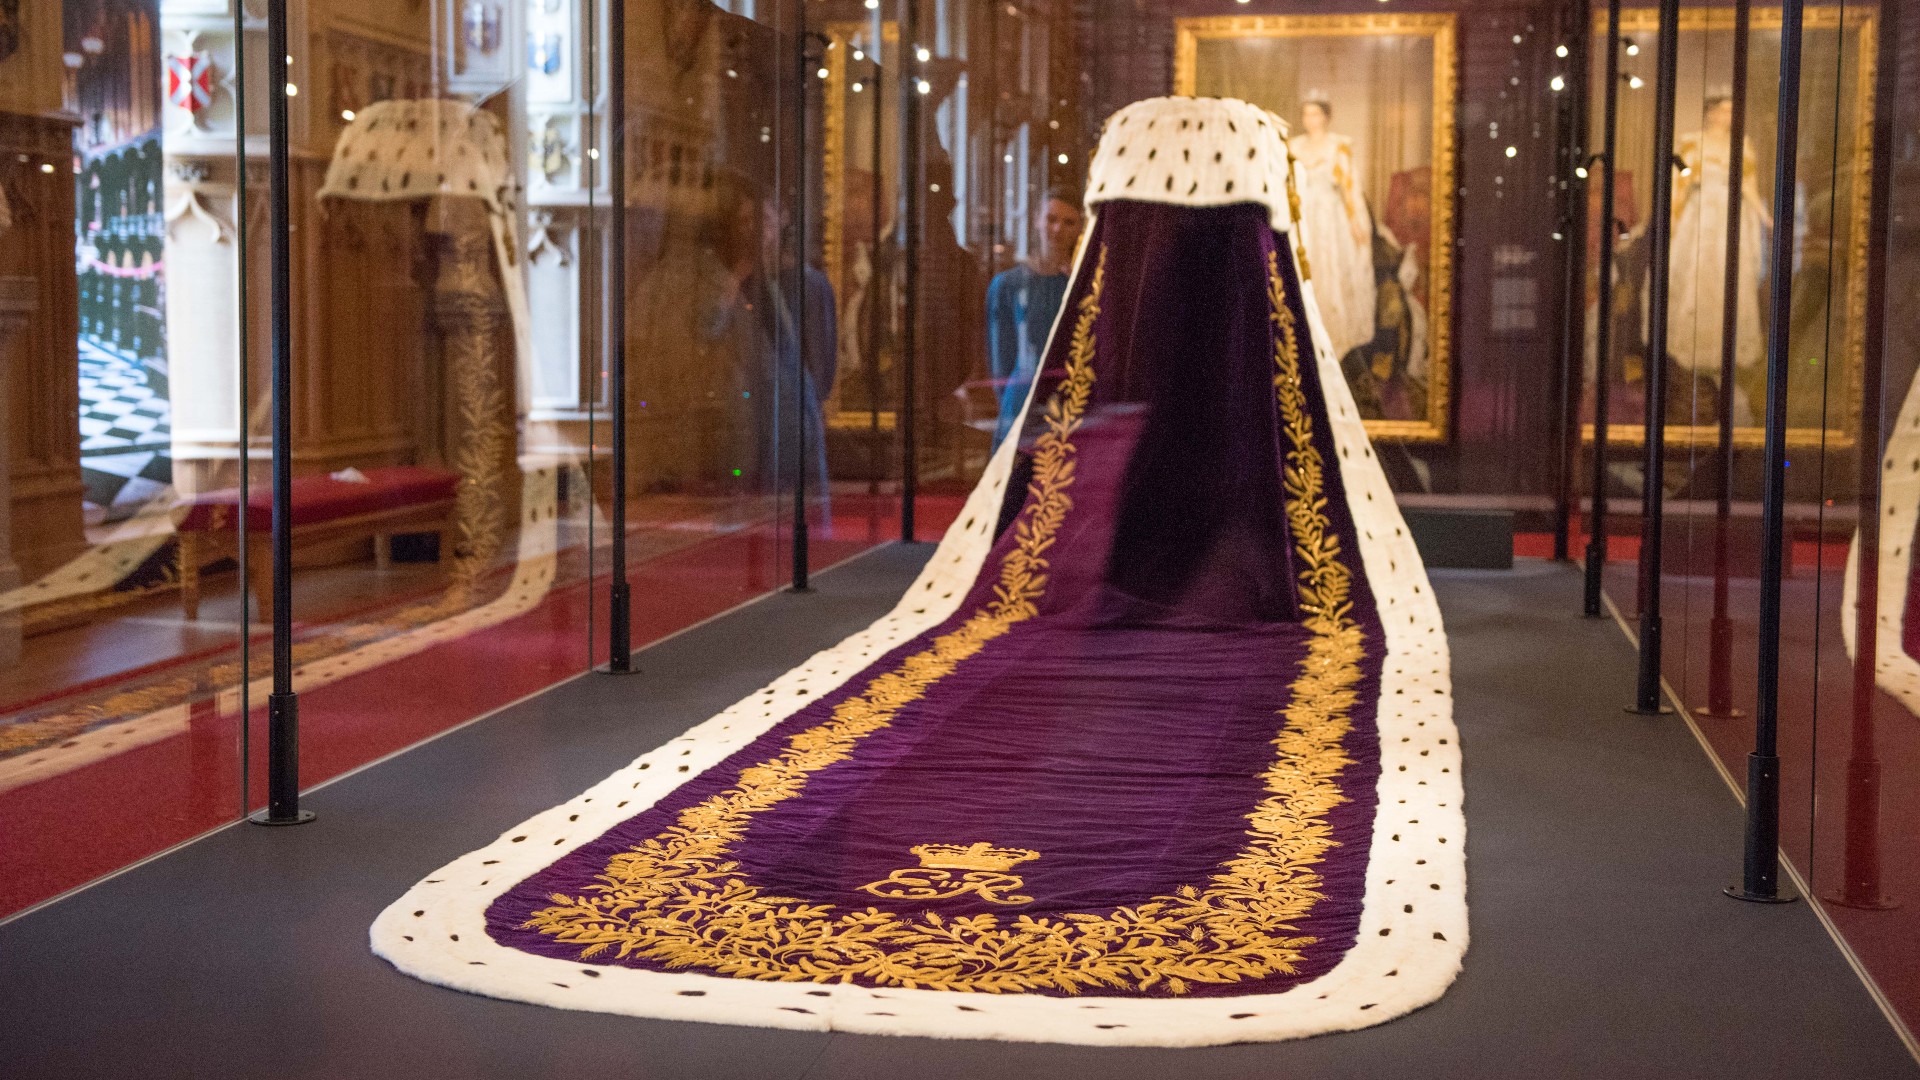 根据《嘉人》杂志的皇室专家，对加冕礼的着装规范有什么期待BETVLCTOR伟德登录 - 伟德bevidtor